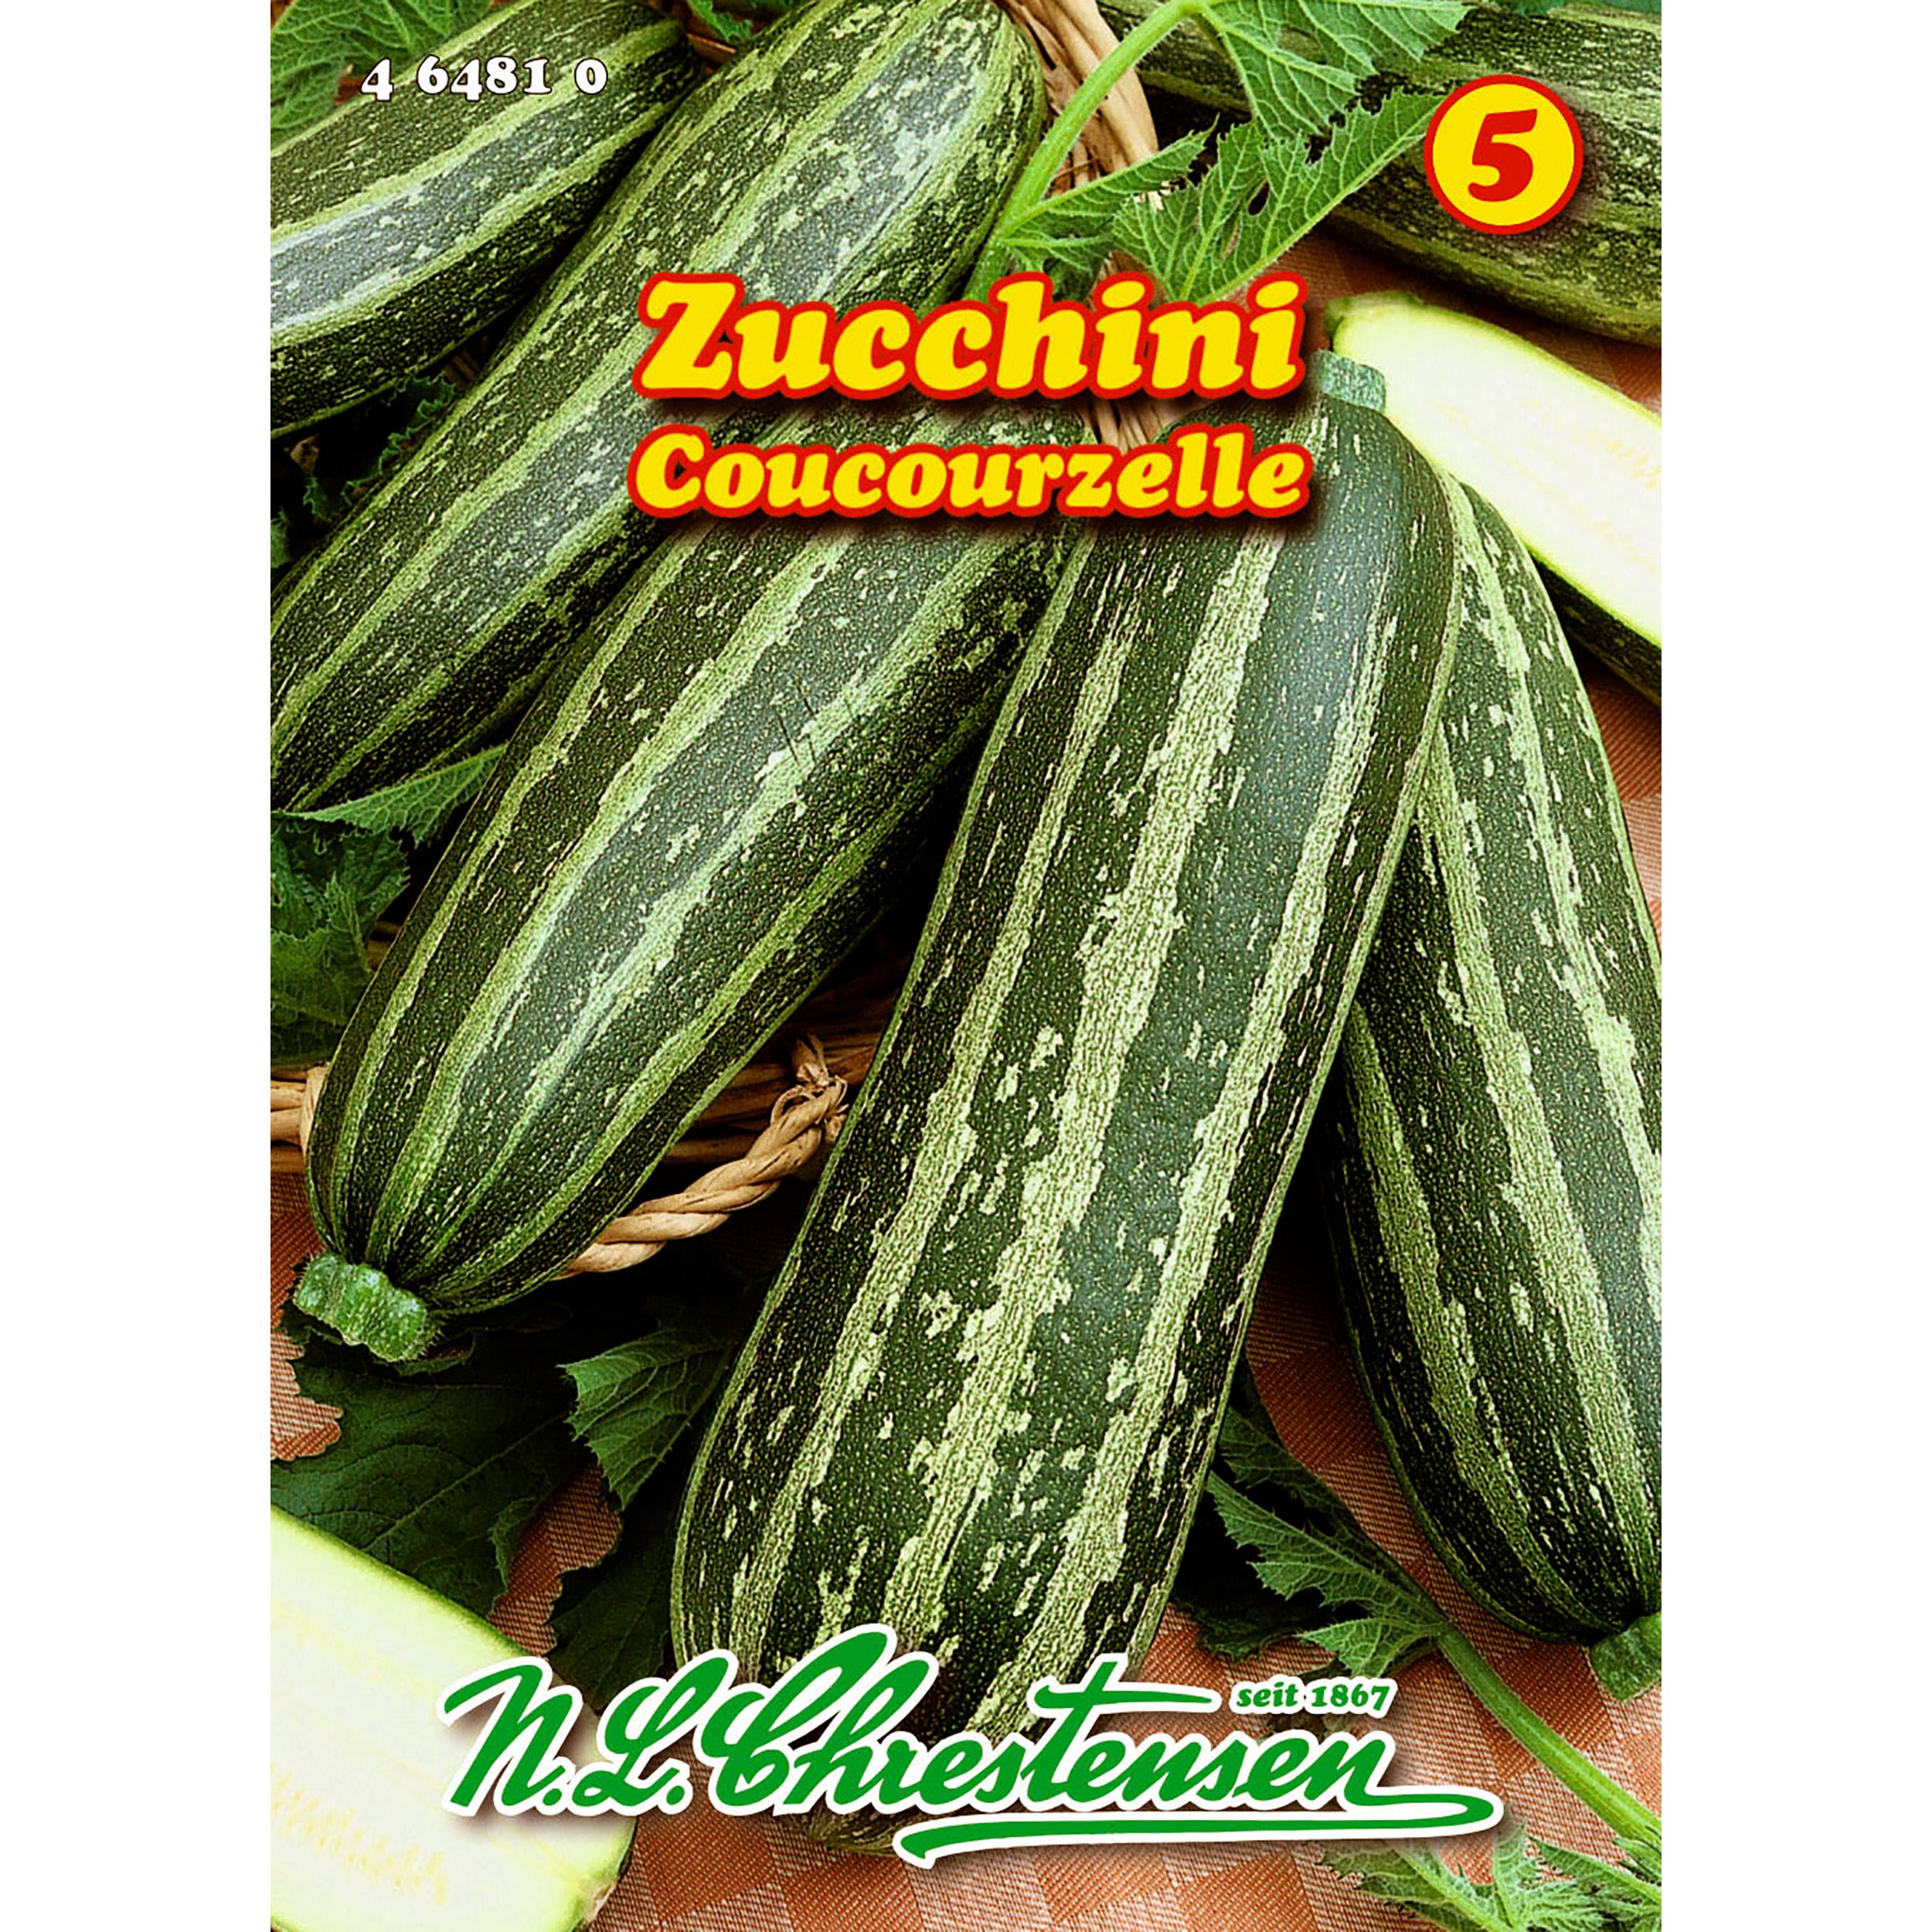 Zucchini, Cocozelle v. Tripolis